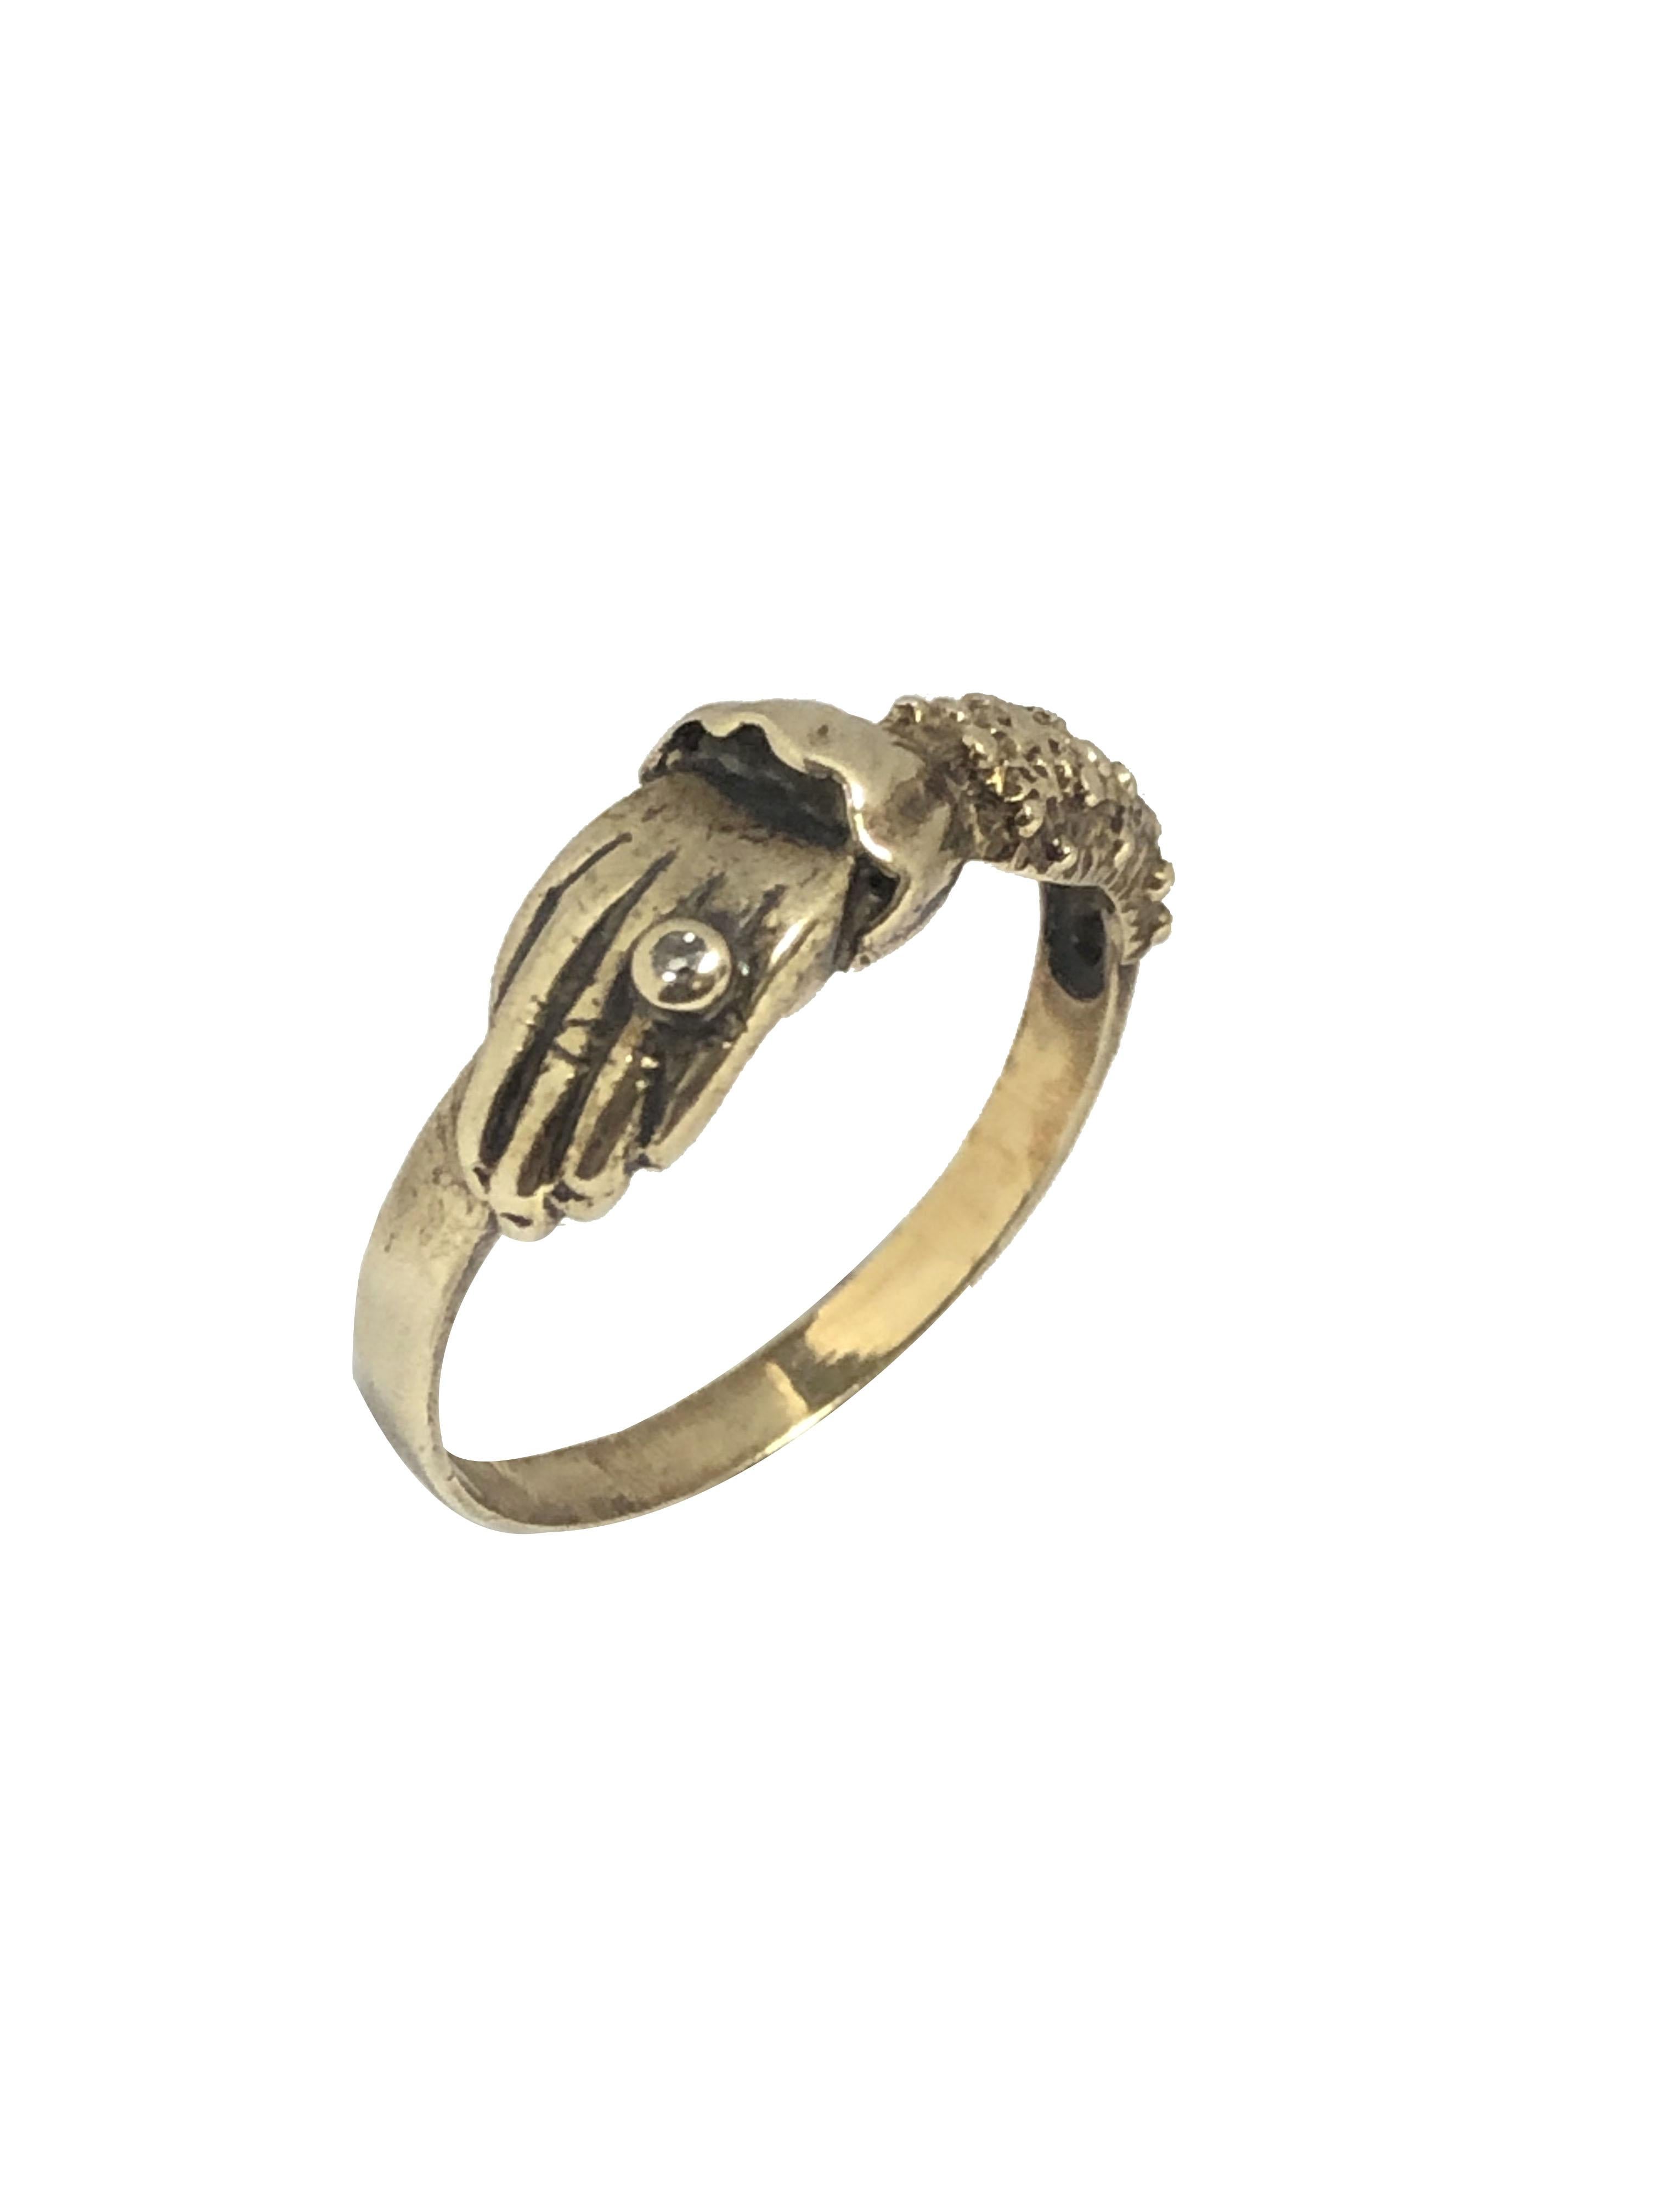 Circa 1880 - 1890 Or jaune 9K Anglais Hallmarked Hand Over heart Ring, le haut mesure 5/8 X 1/4 pouce, très joliment détaillé et ayant un anneau serti de diamants sur l'un des doigts. Taille de doigt 8. 